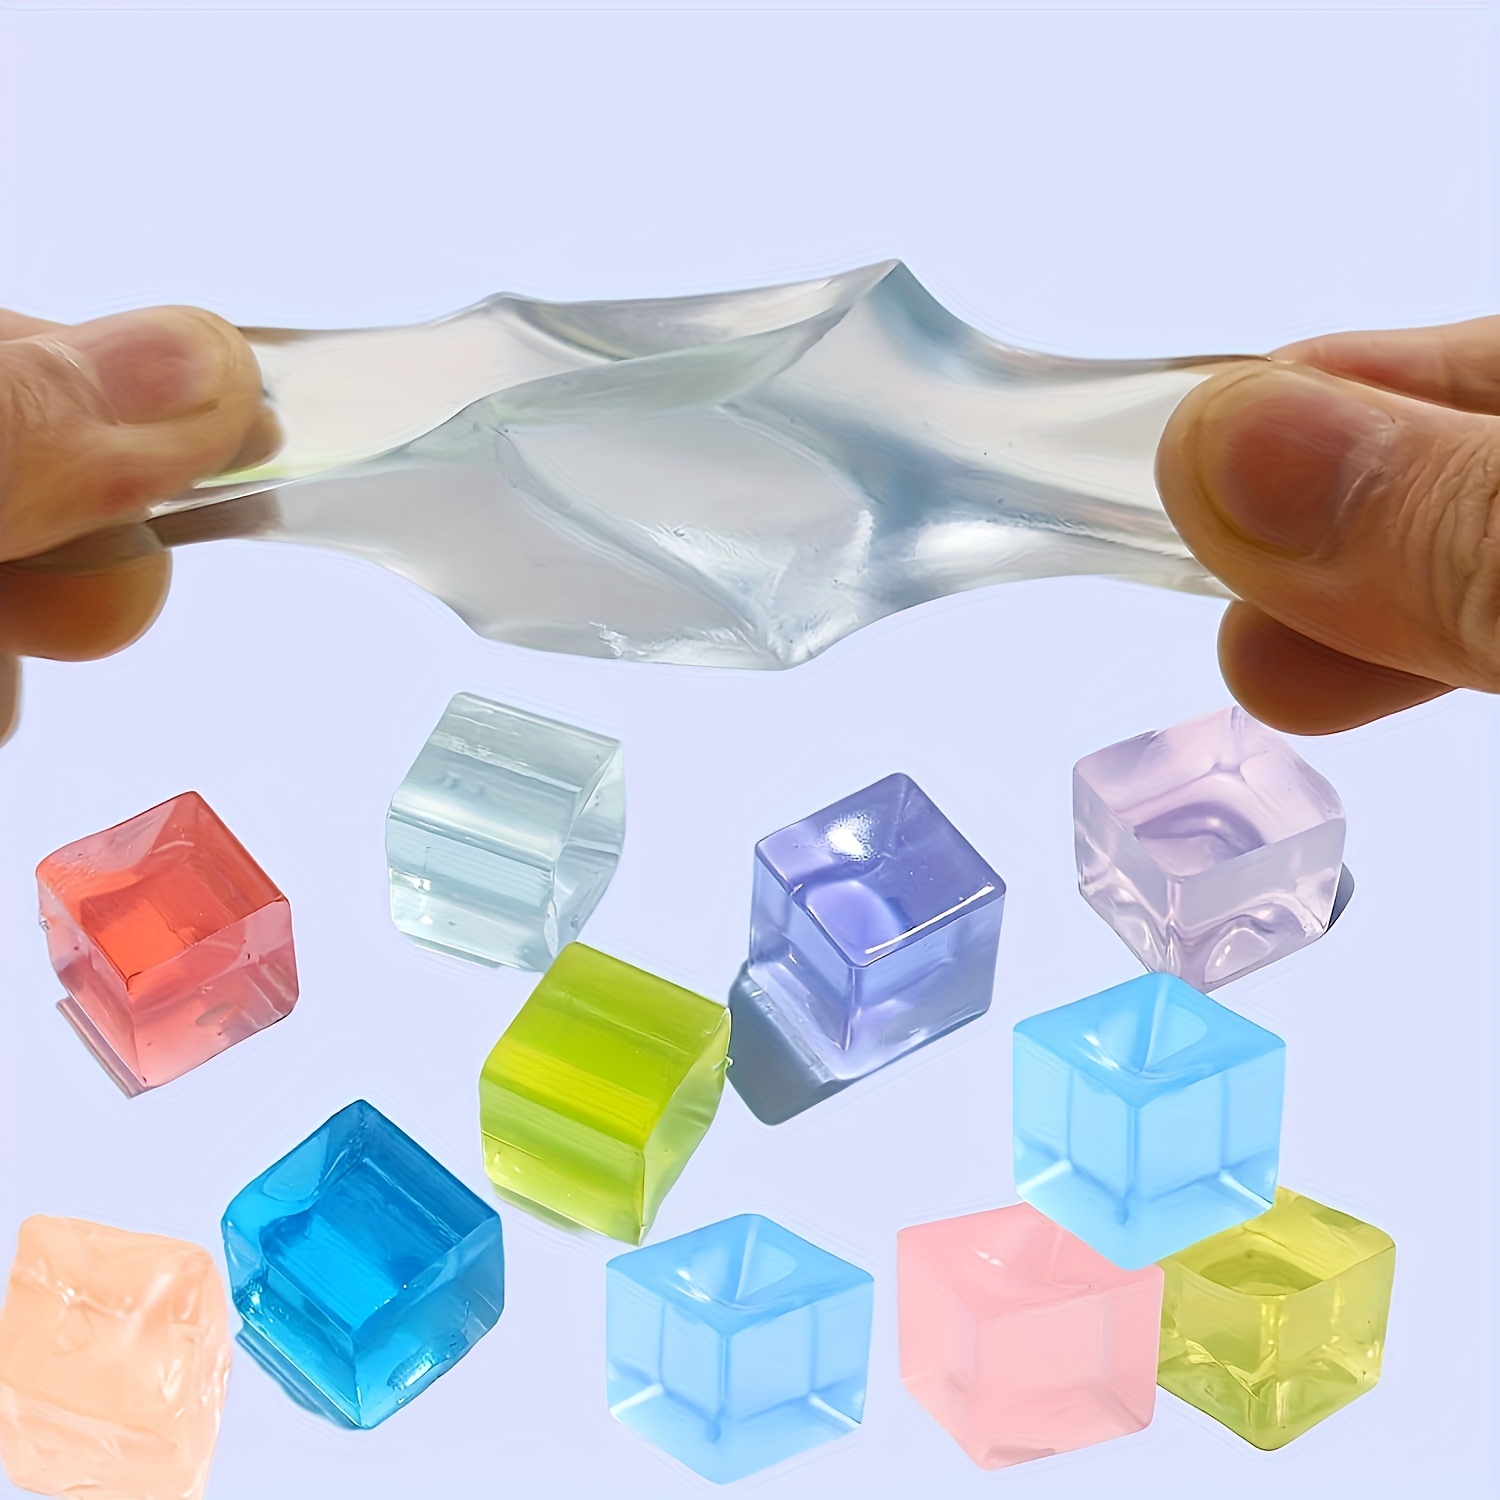 Ce cube transformable à l'infini vient d'être élu meilleur anti-stress au  monde